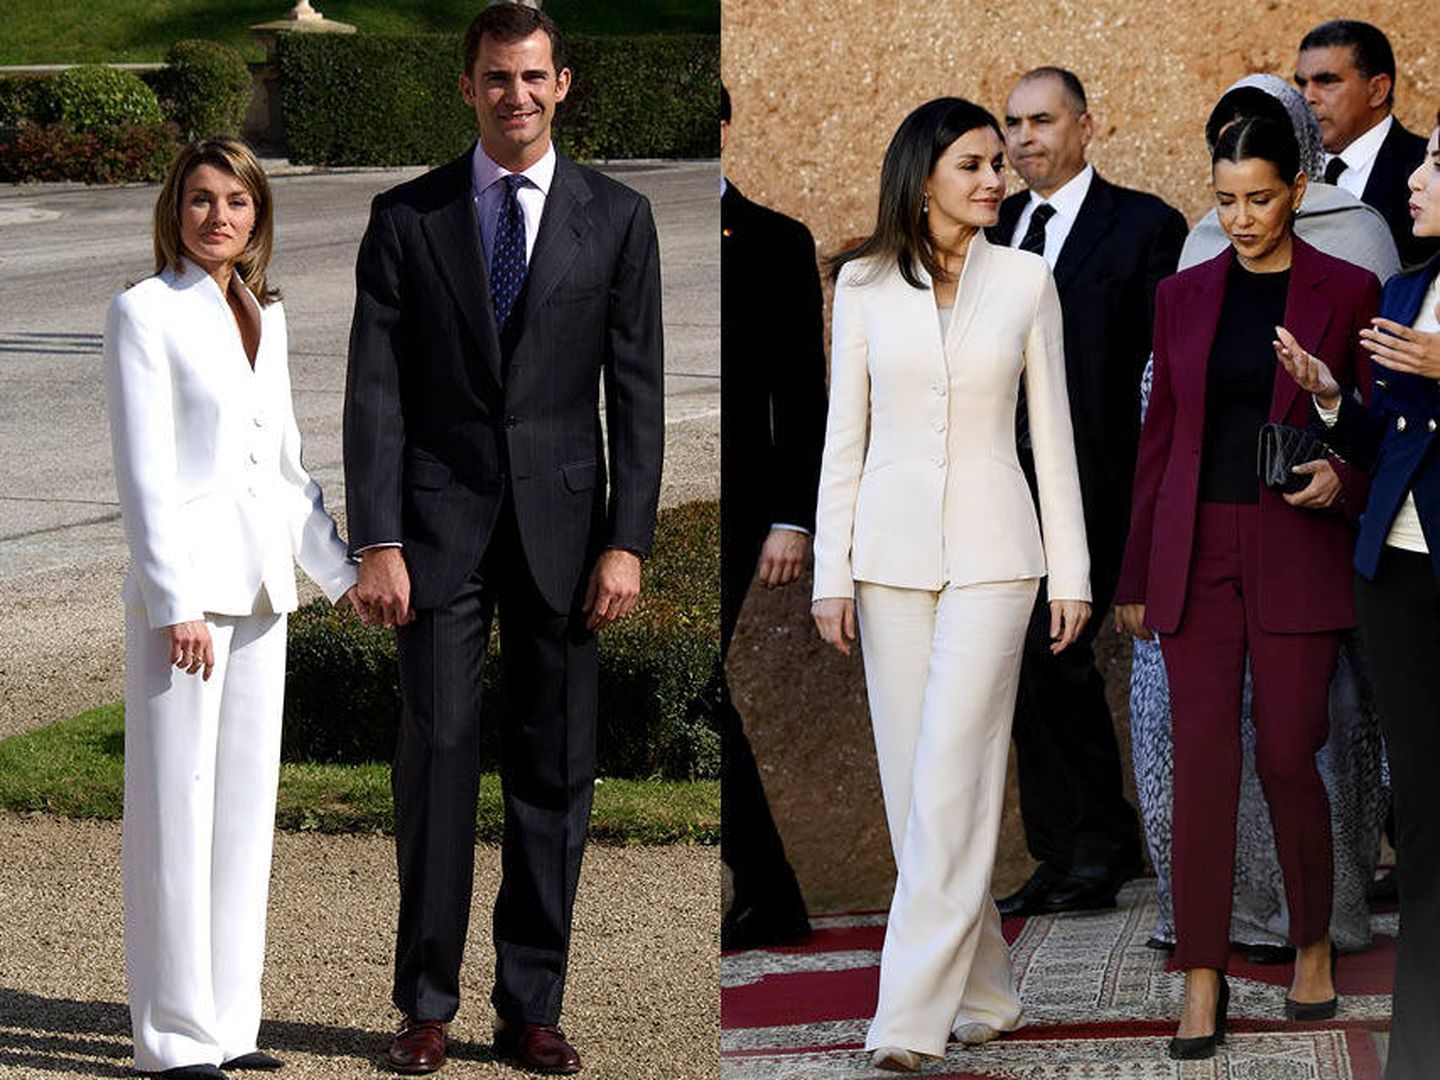  La Reina con el traje en 2003 y en 2019.(Getty y Limited)